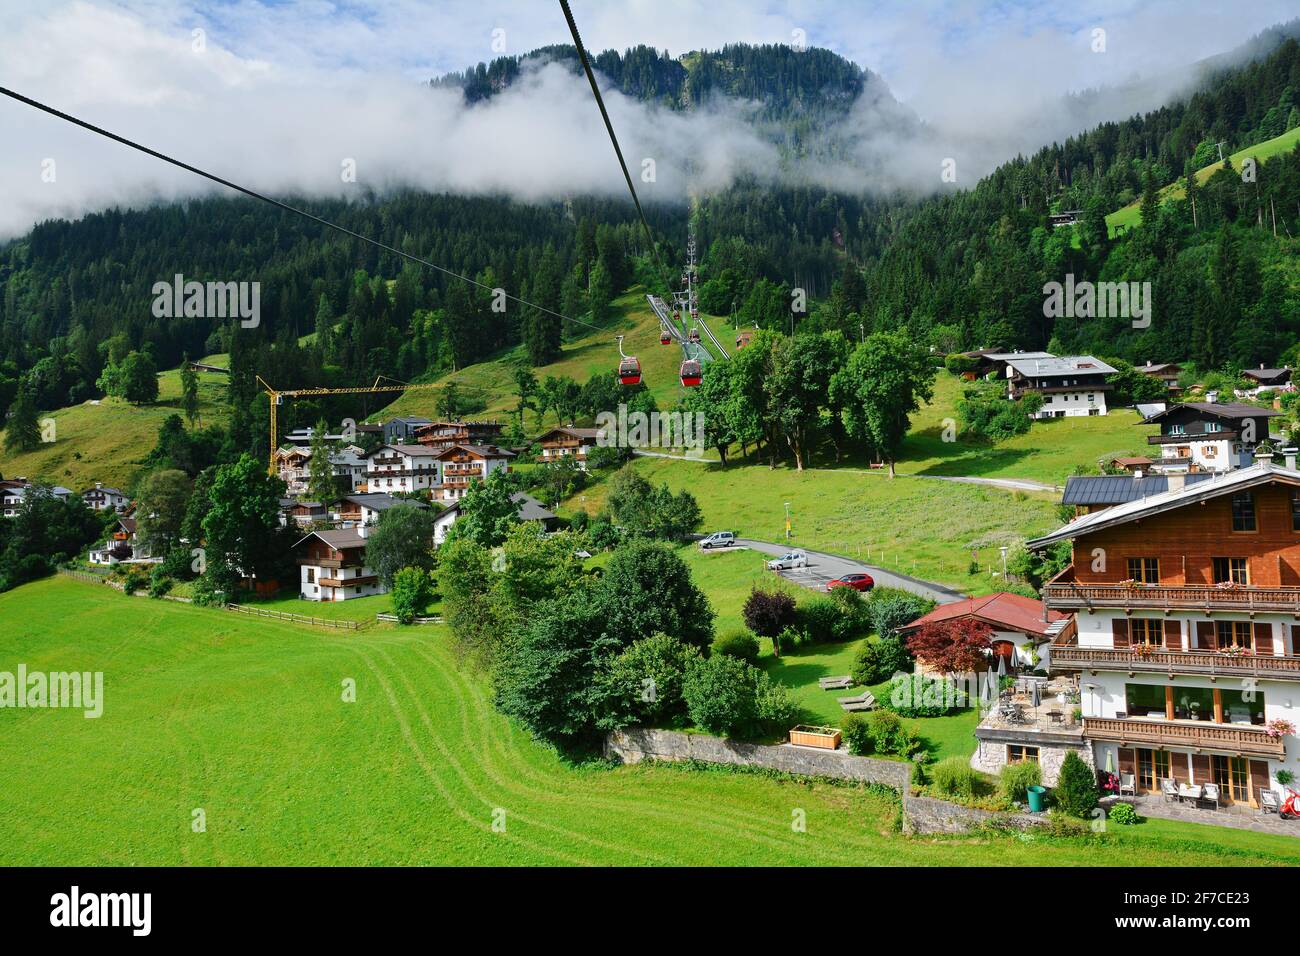 Vista della città di Kitzbuhel vista dalla funivia che impianti di risalita fino alla pista sciistica di Hahnenkamm, Tirol, Austria Foto Stock